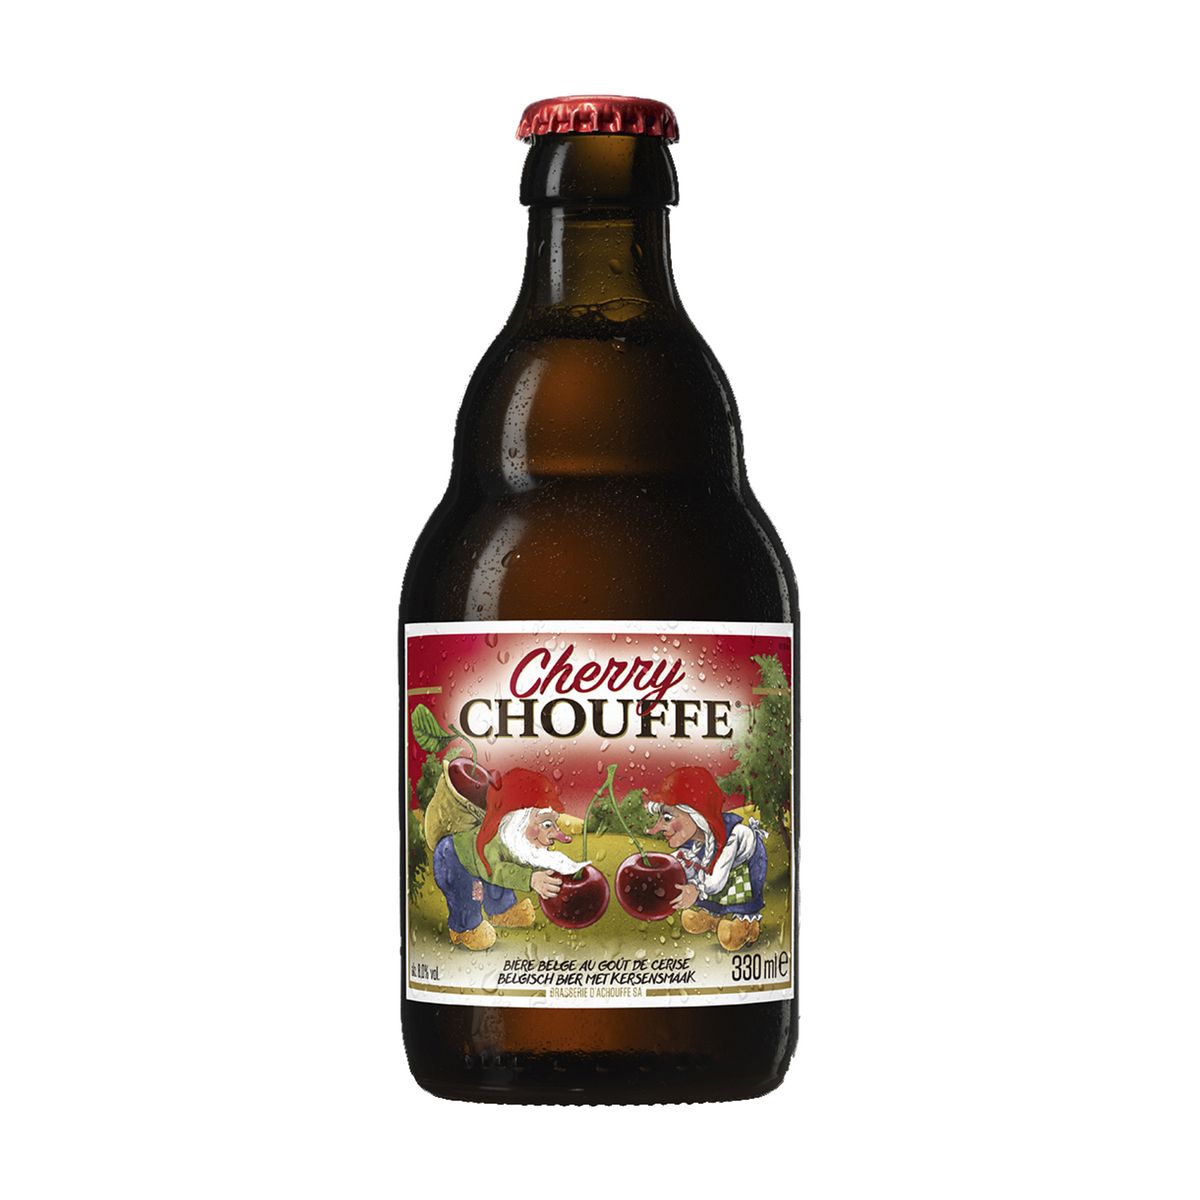 LA CHOUFFE Bière rouge belge cherry 8% bouteille 33cl